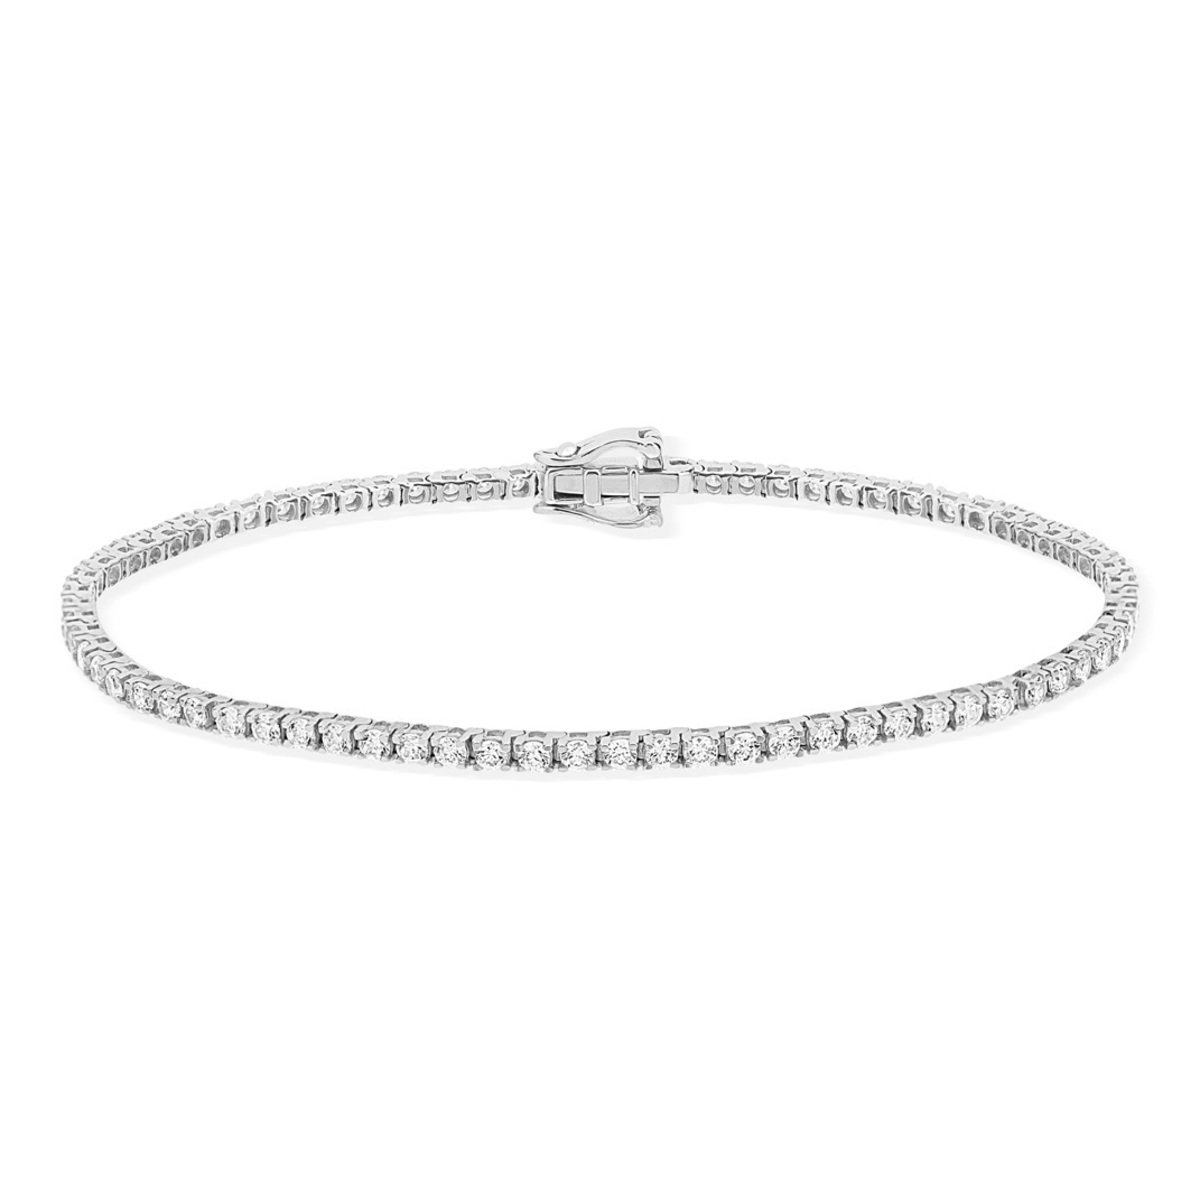 Bracelet tennis or 750 blanc diamant synthétique - vue 2